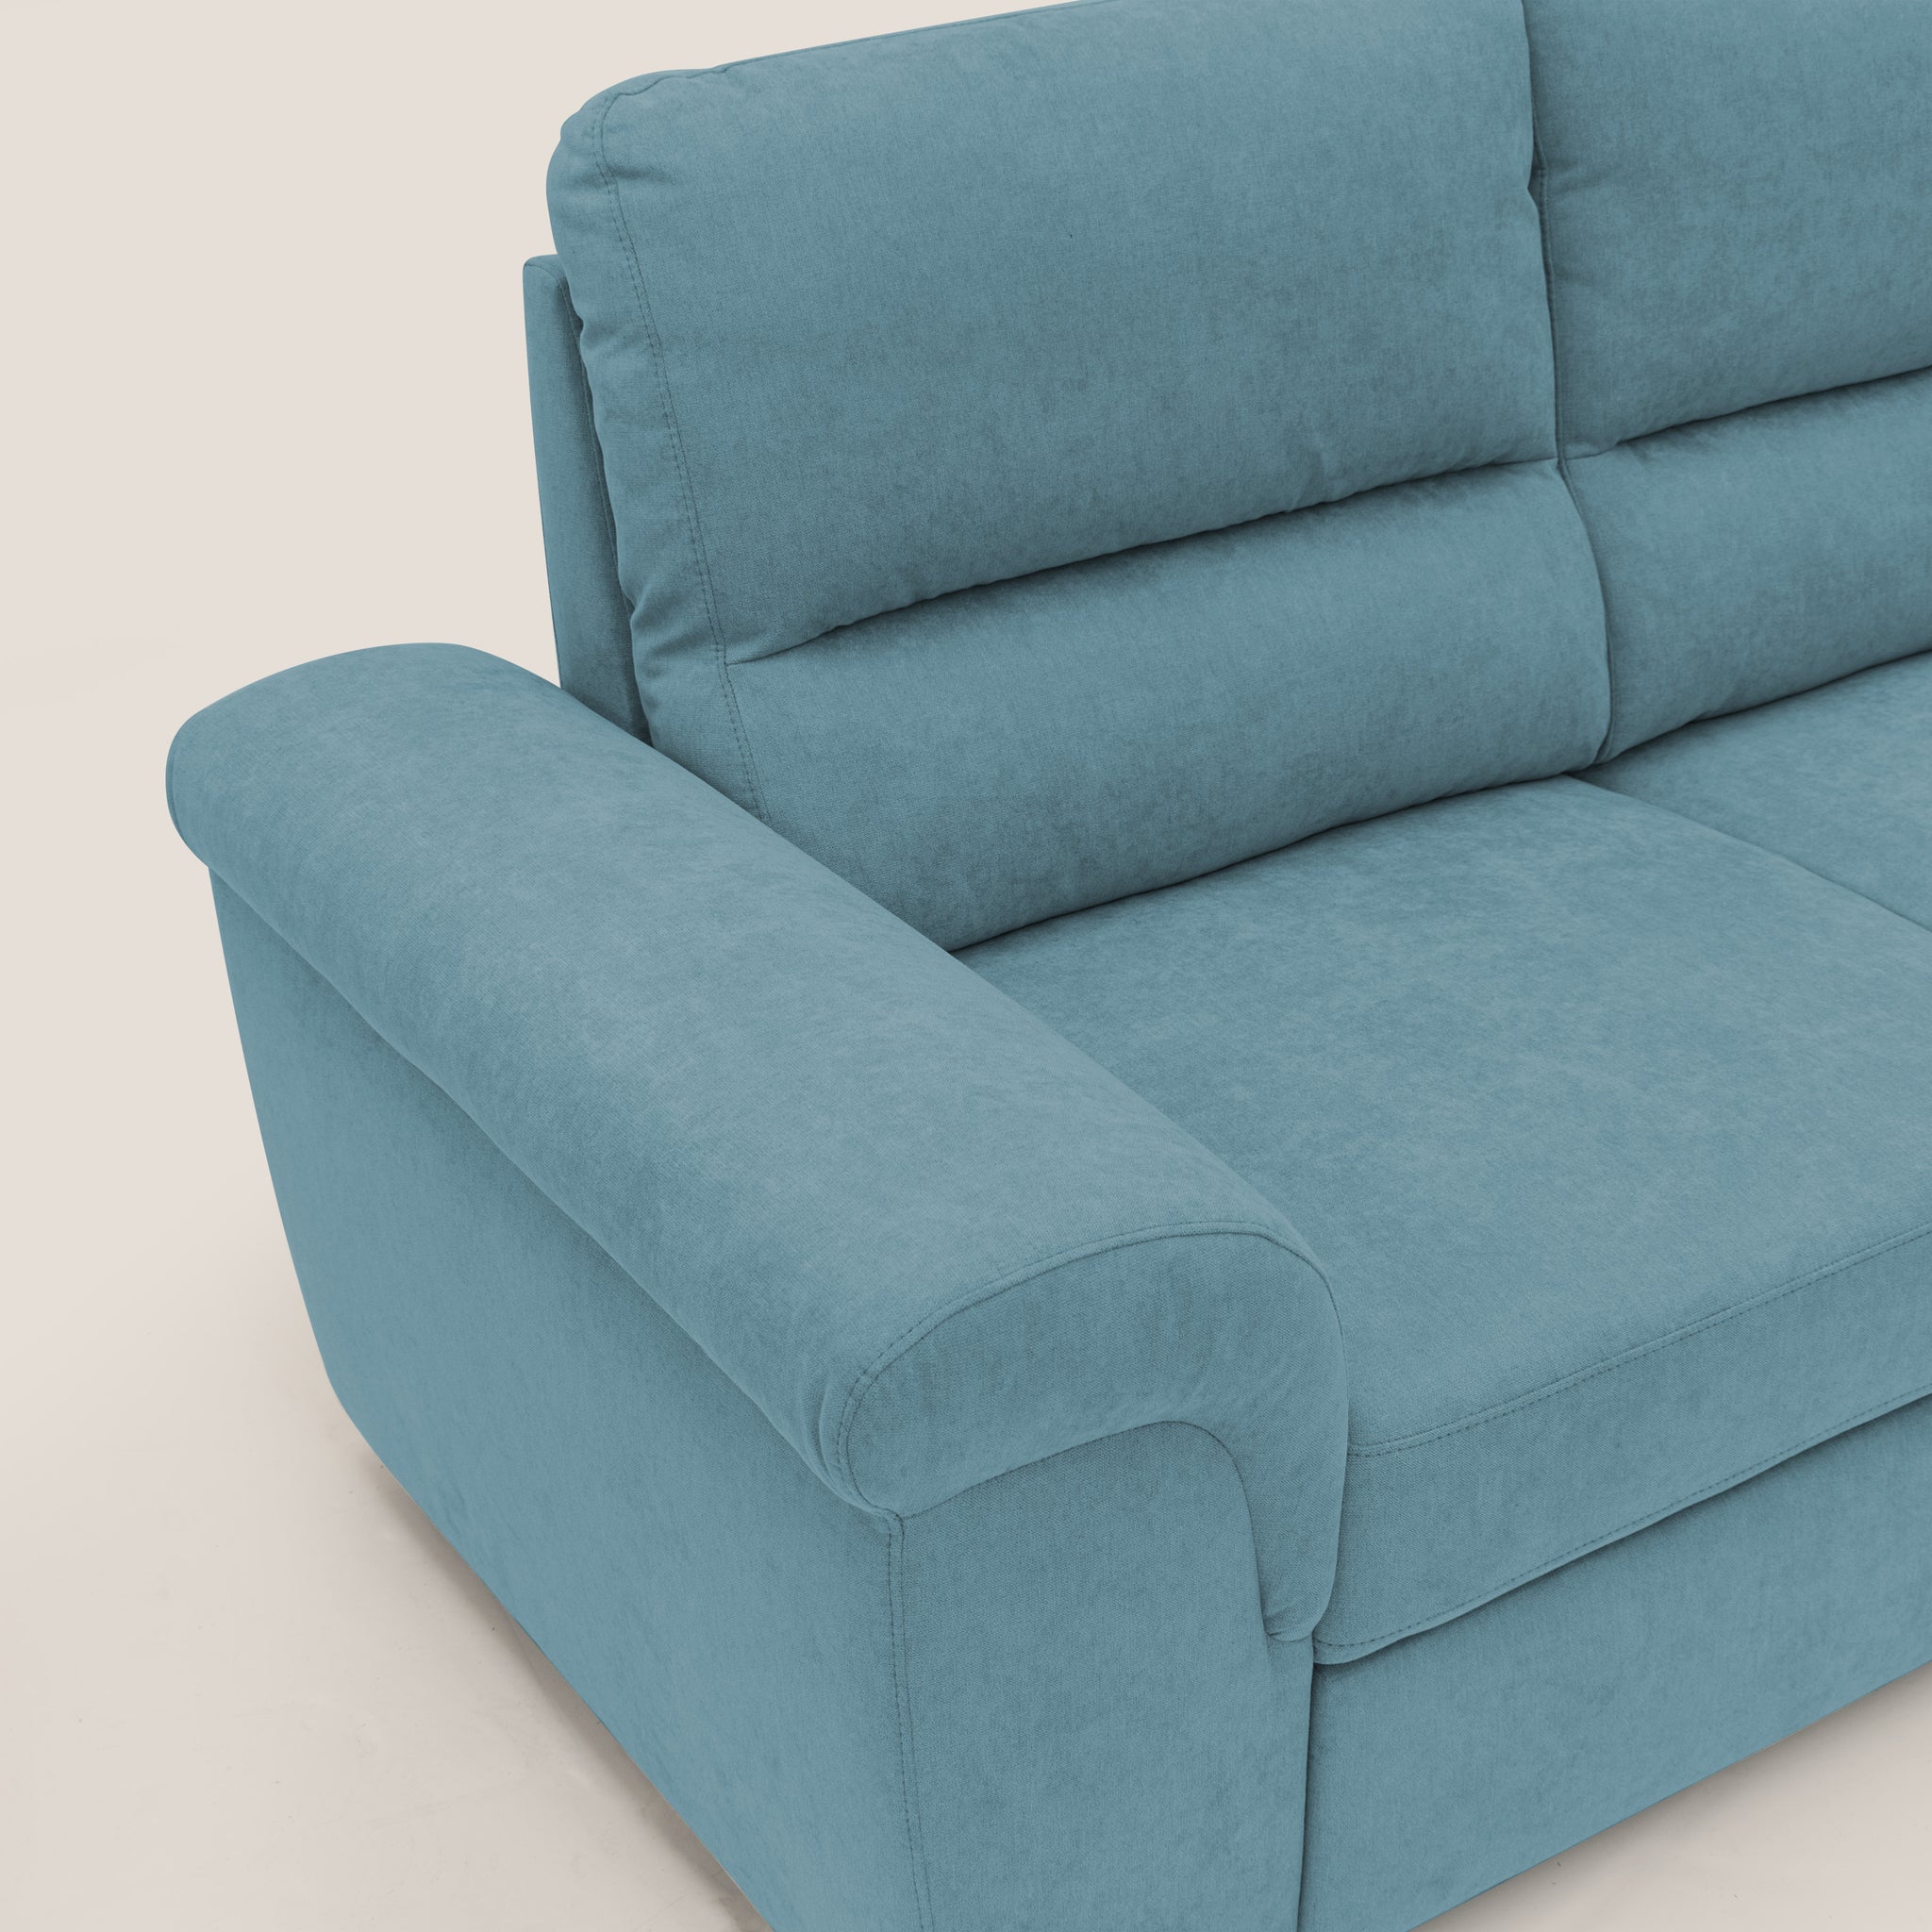 Minerva divano con estraibile in tessuto morbido impermeabile T02